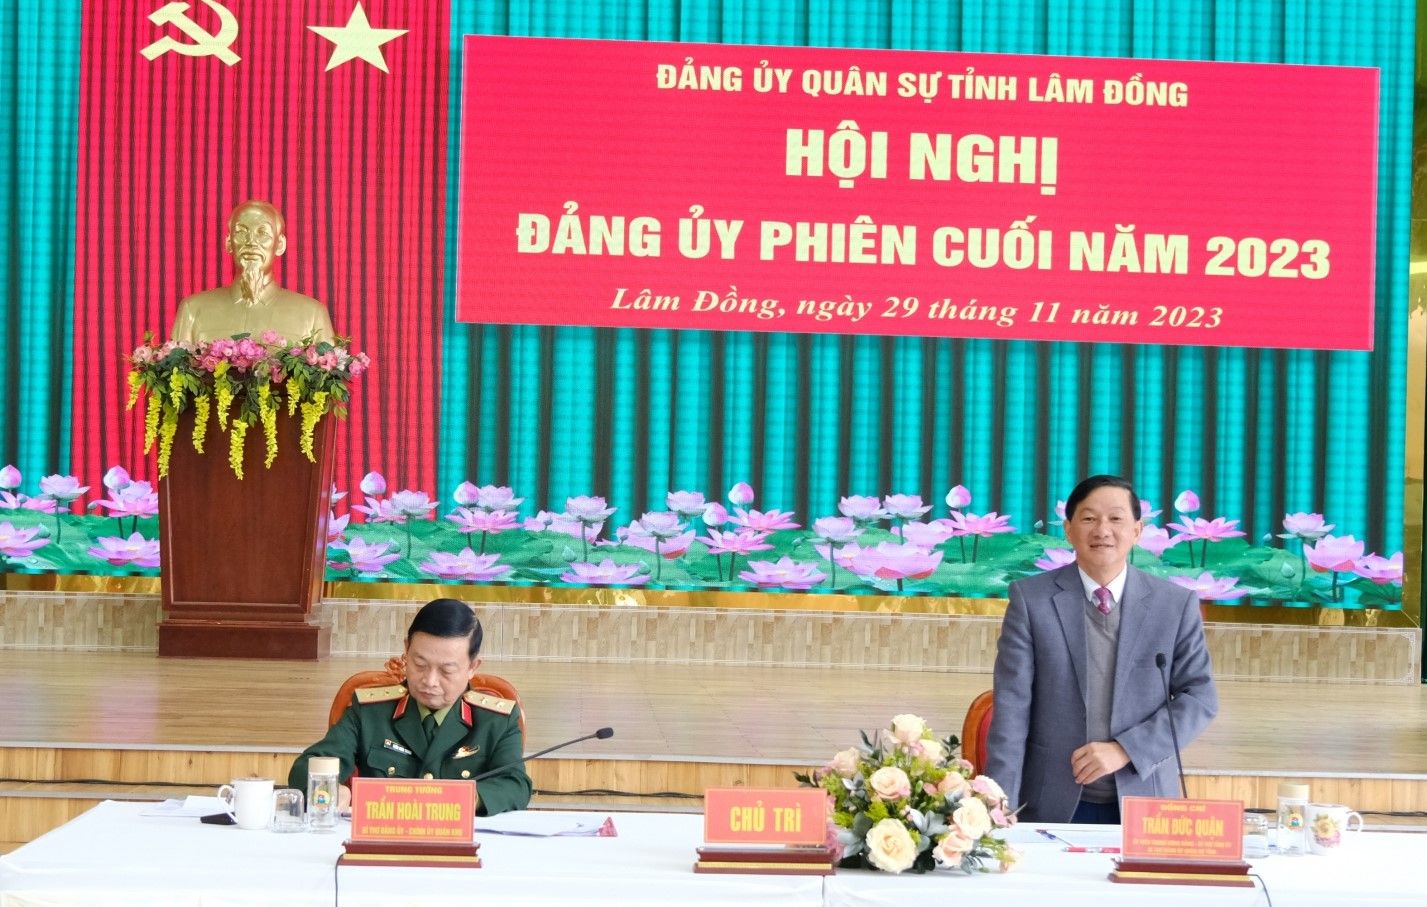 Đảng ủy Quân sự tỉnh Lâm Đồng: Xác định hai khâu đột phá trong năm 2024